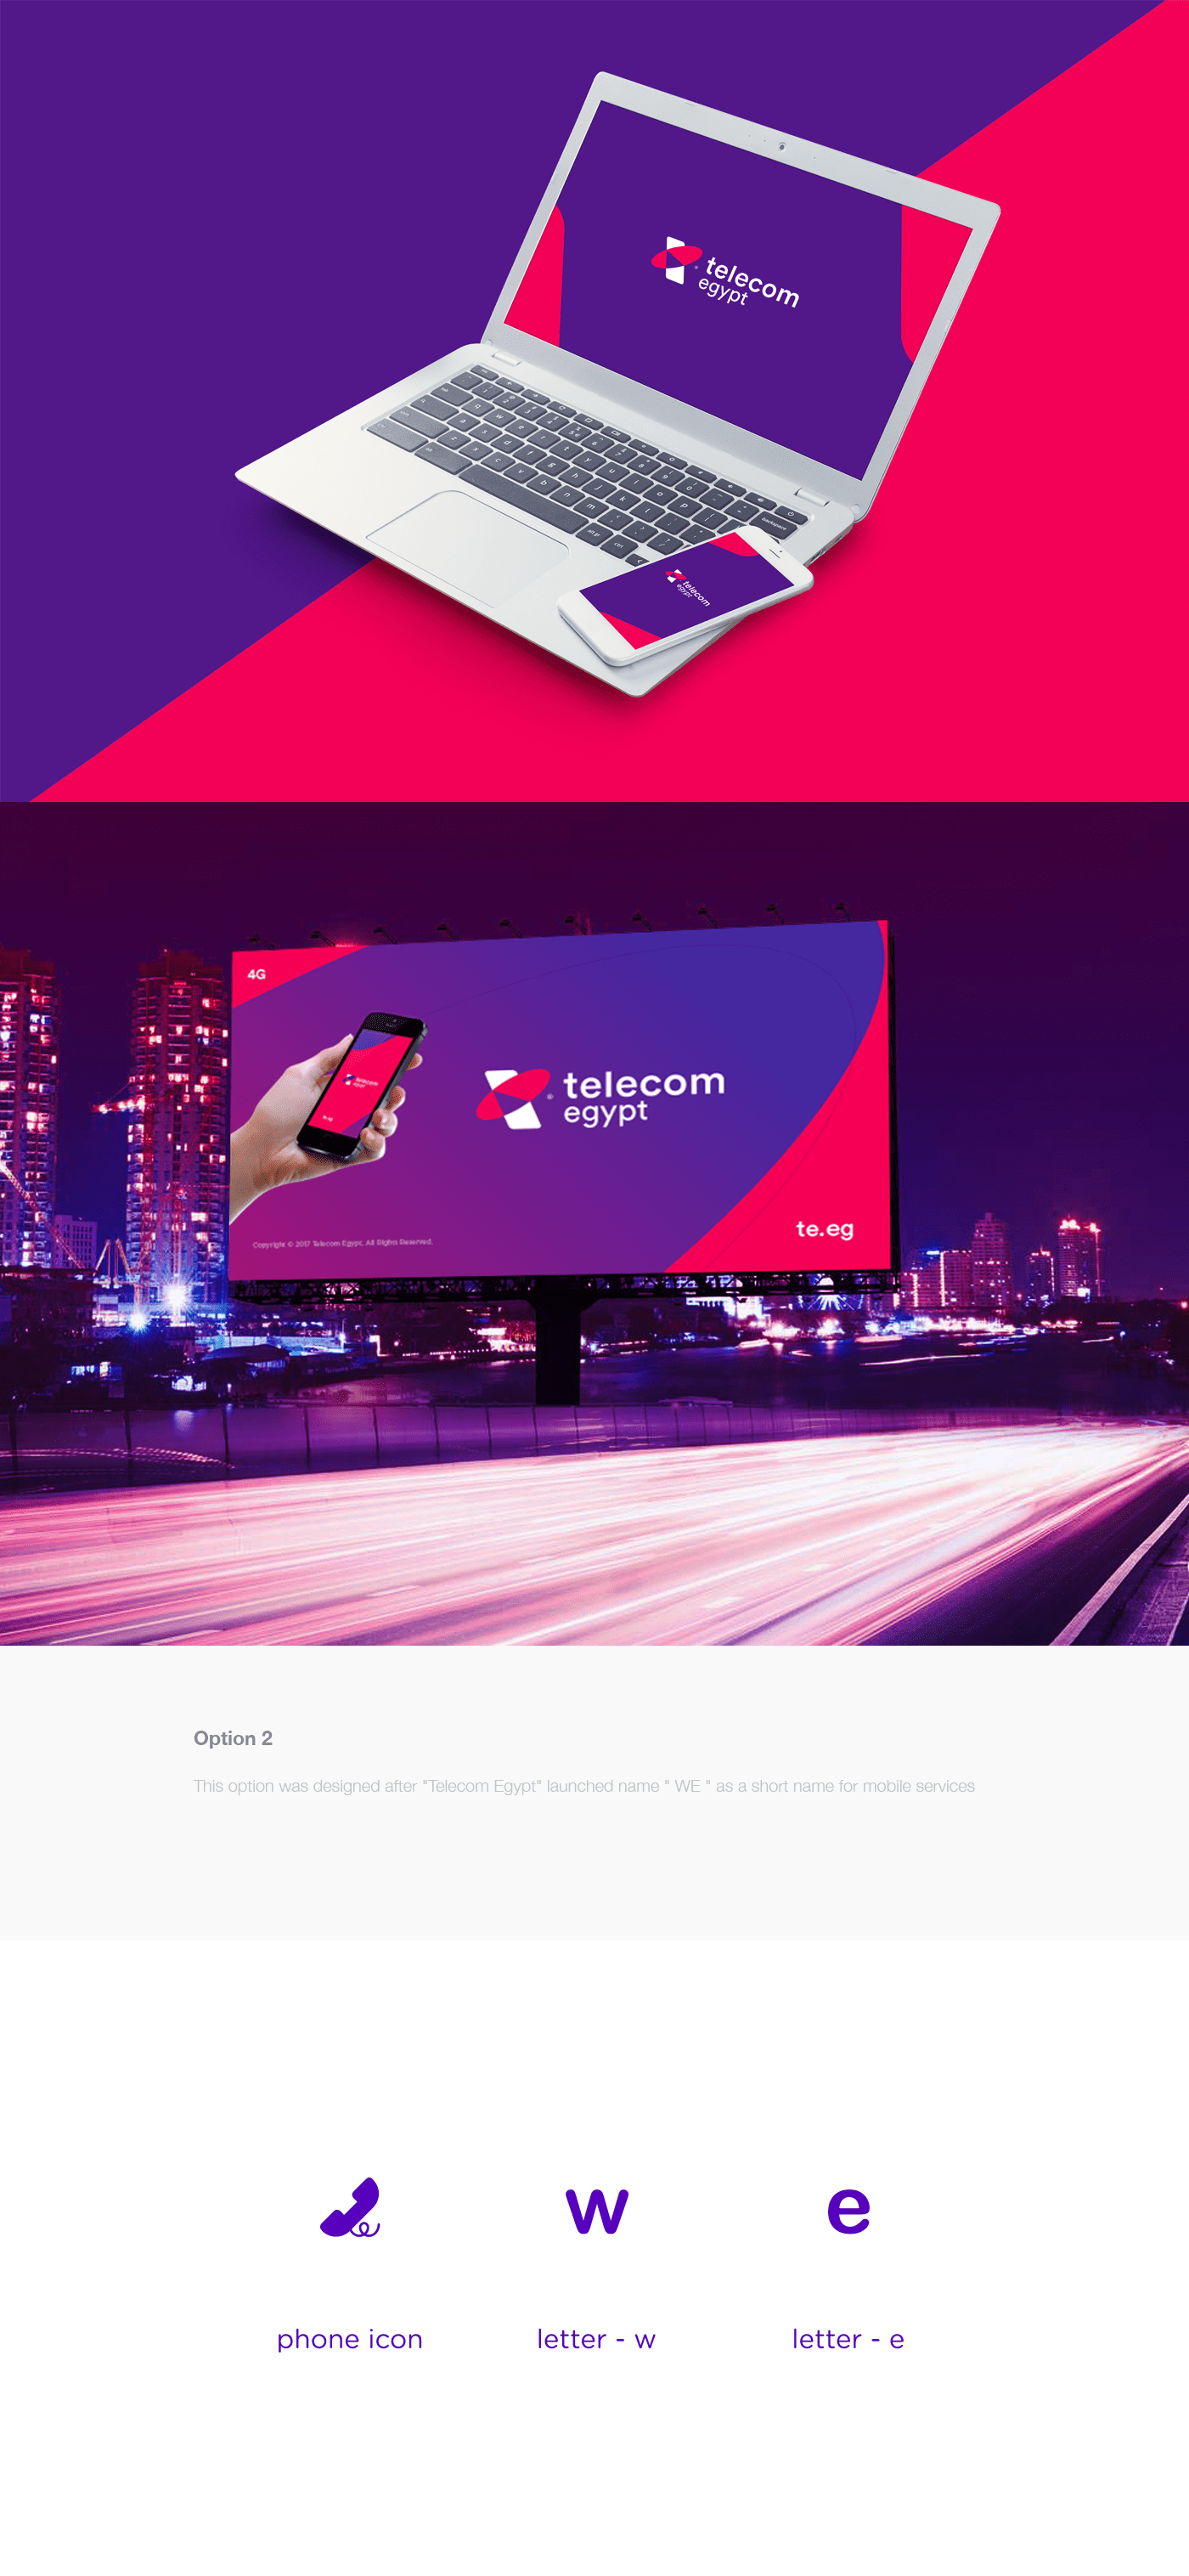 Telecom egypt telecom egypt logo rebranding redesign